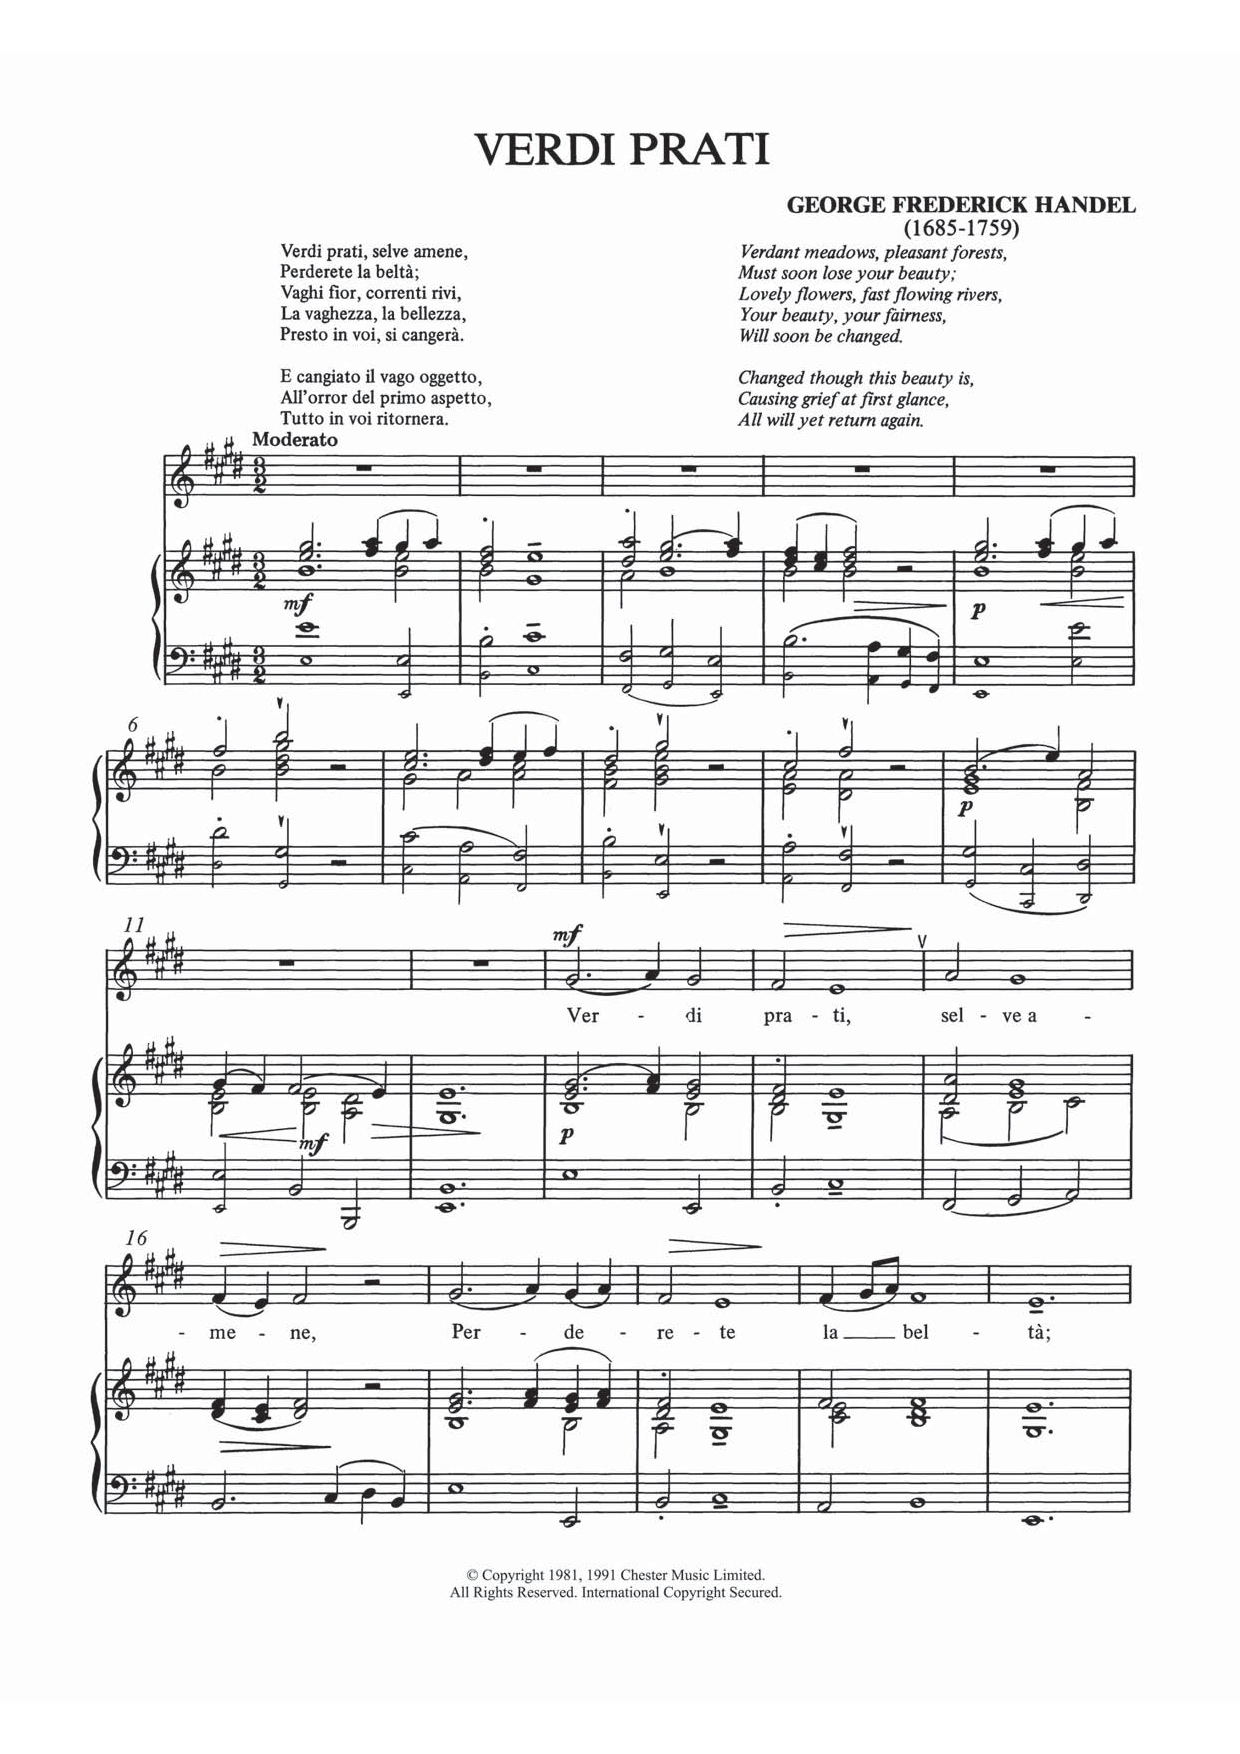 Download George Frideric Handel Verdi Prati Sheet Music